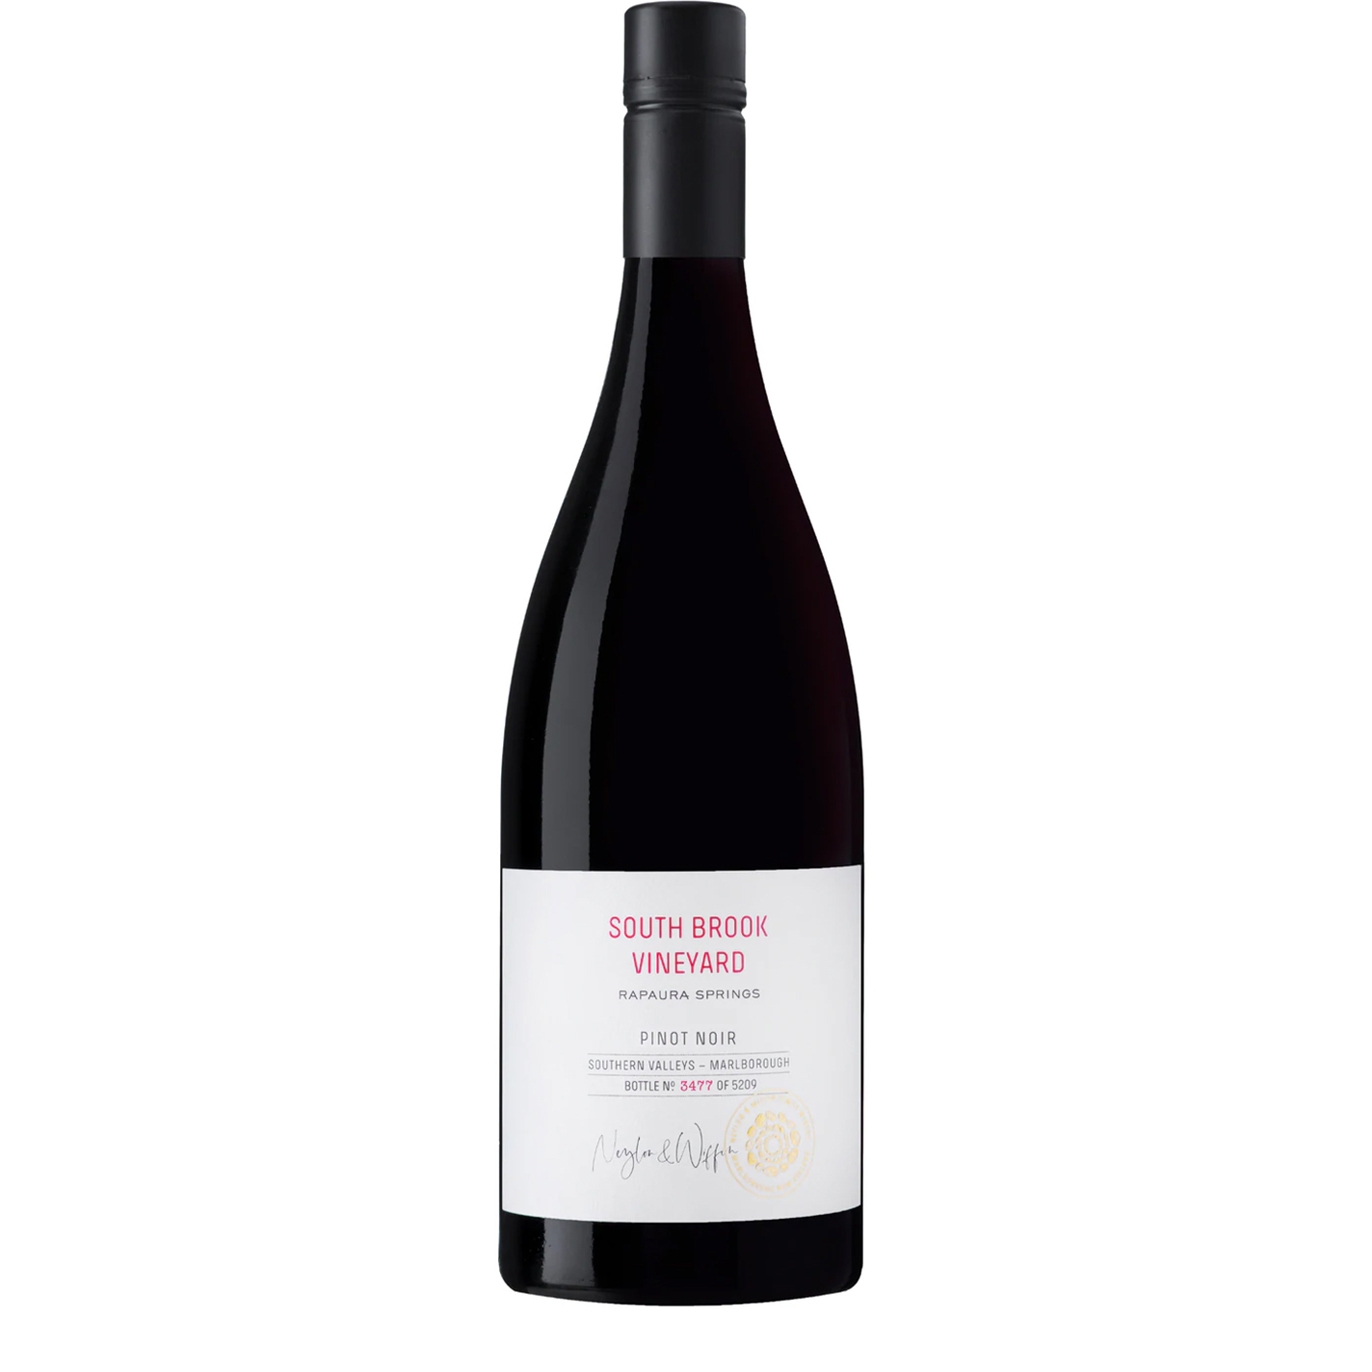 Rapaura Springs South Brook Vineyard Pinot Noir 2019 Red Wine